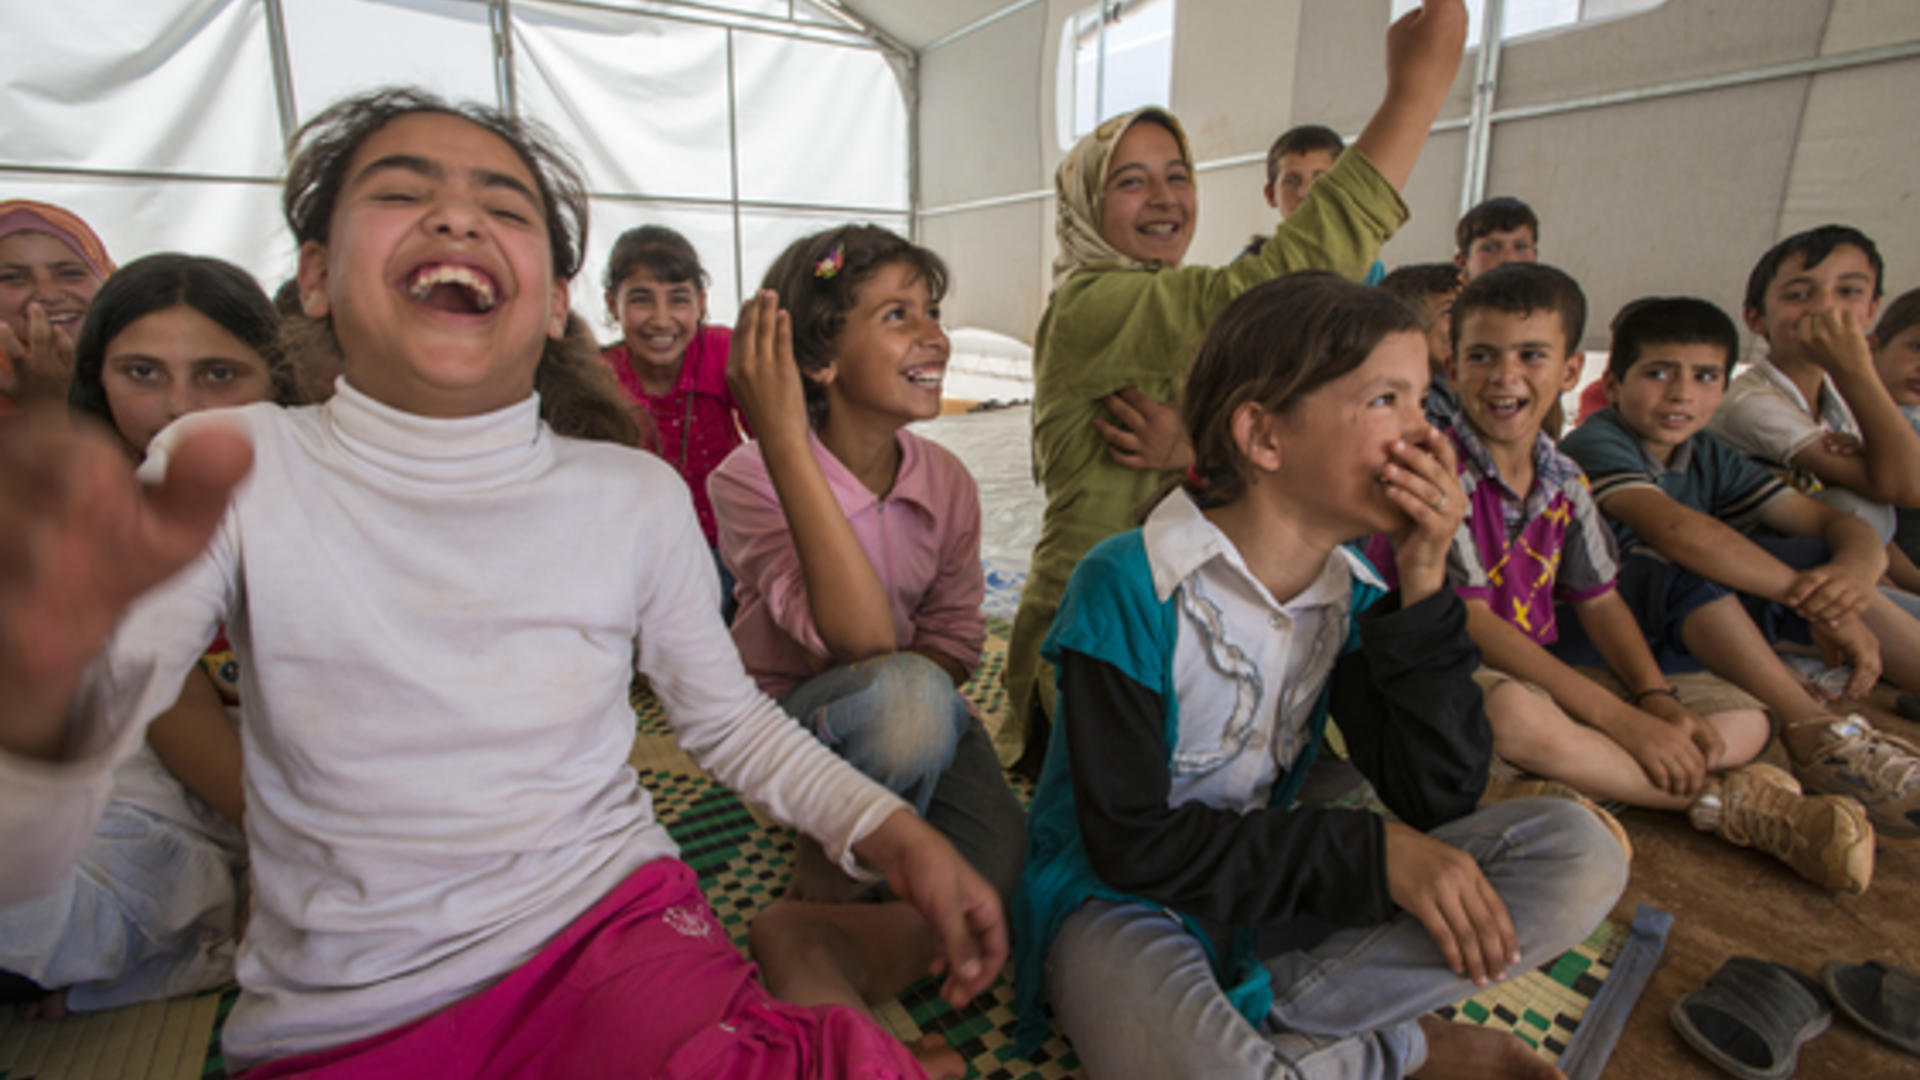 Syrian children in an IRC healing classroom tent